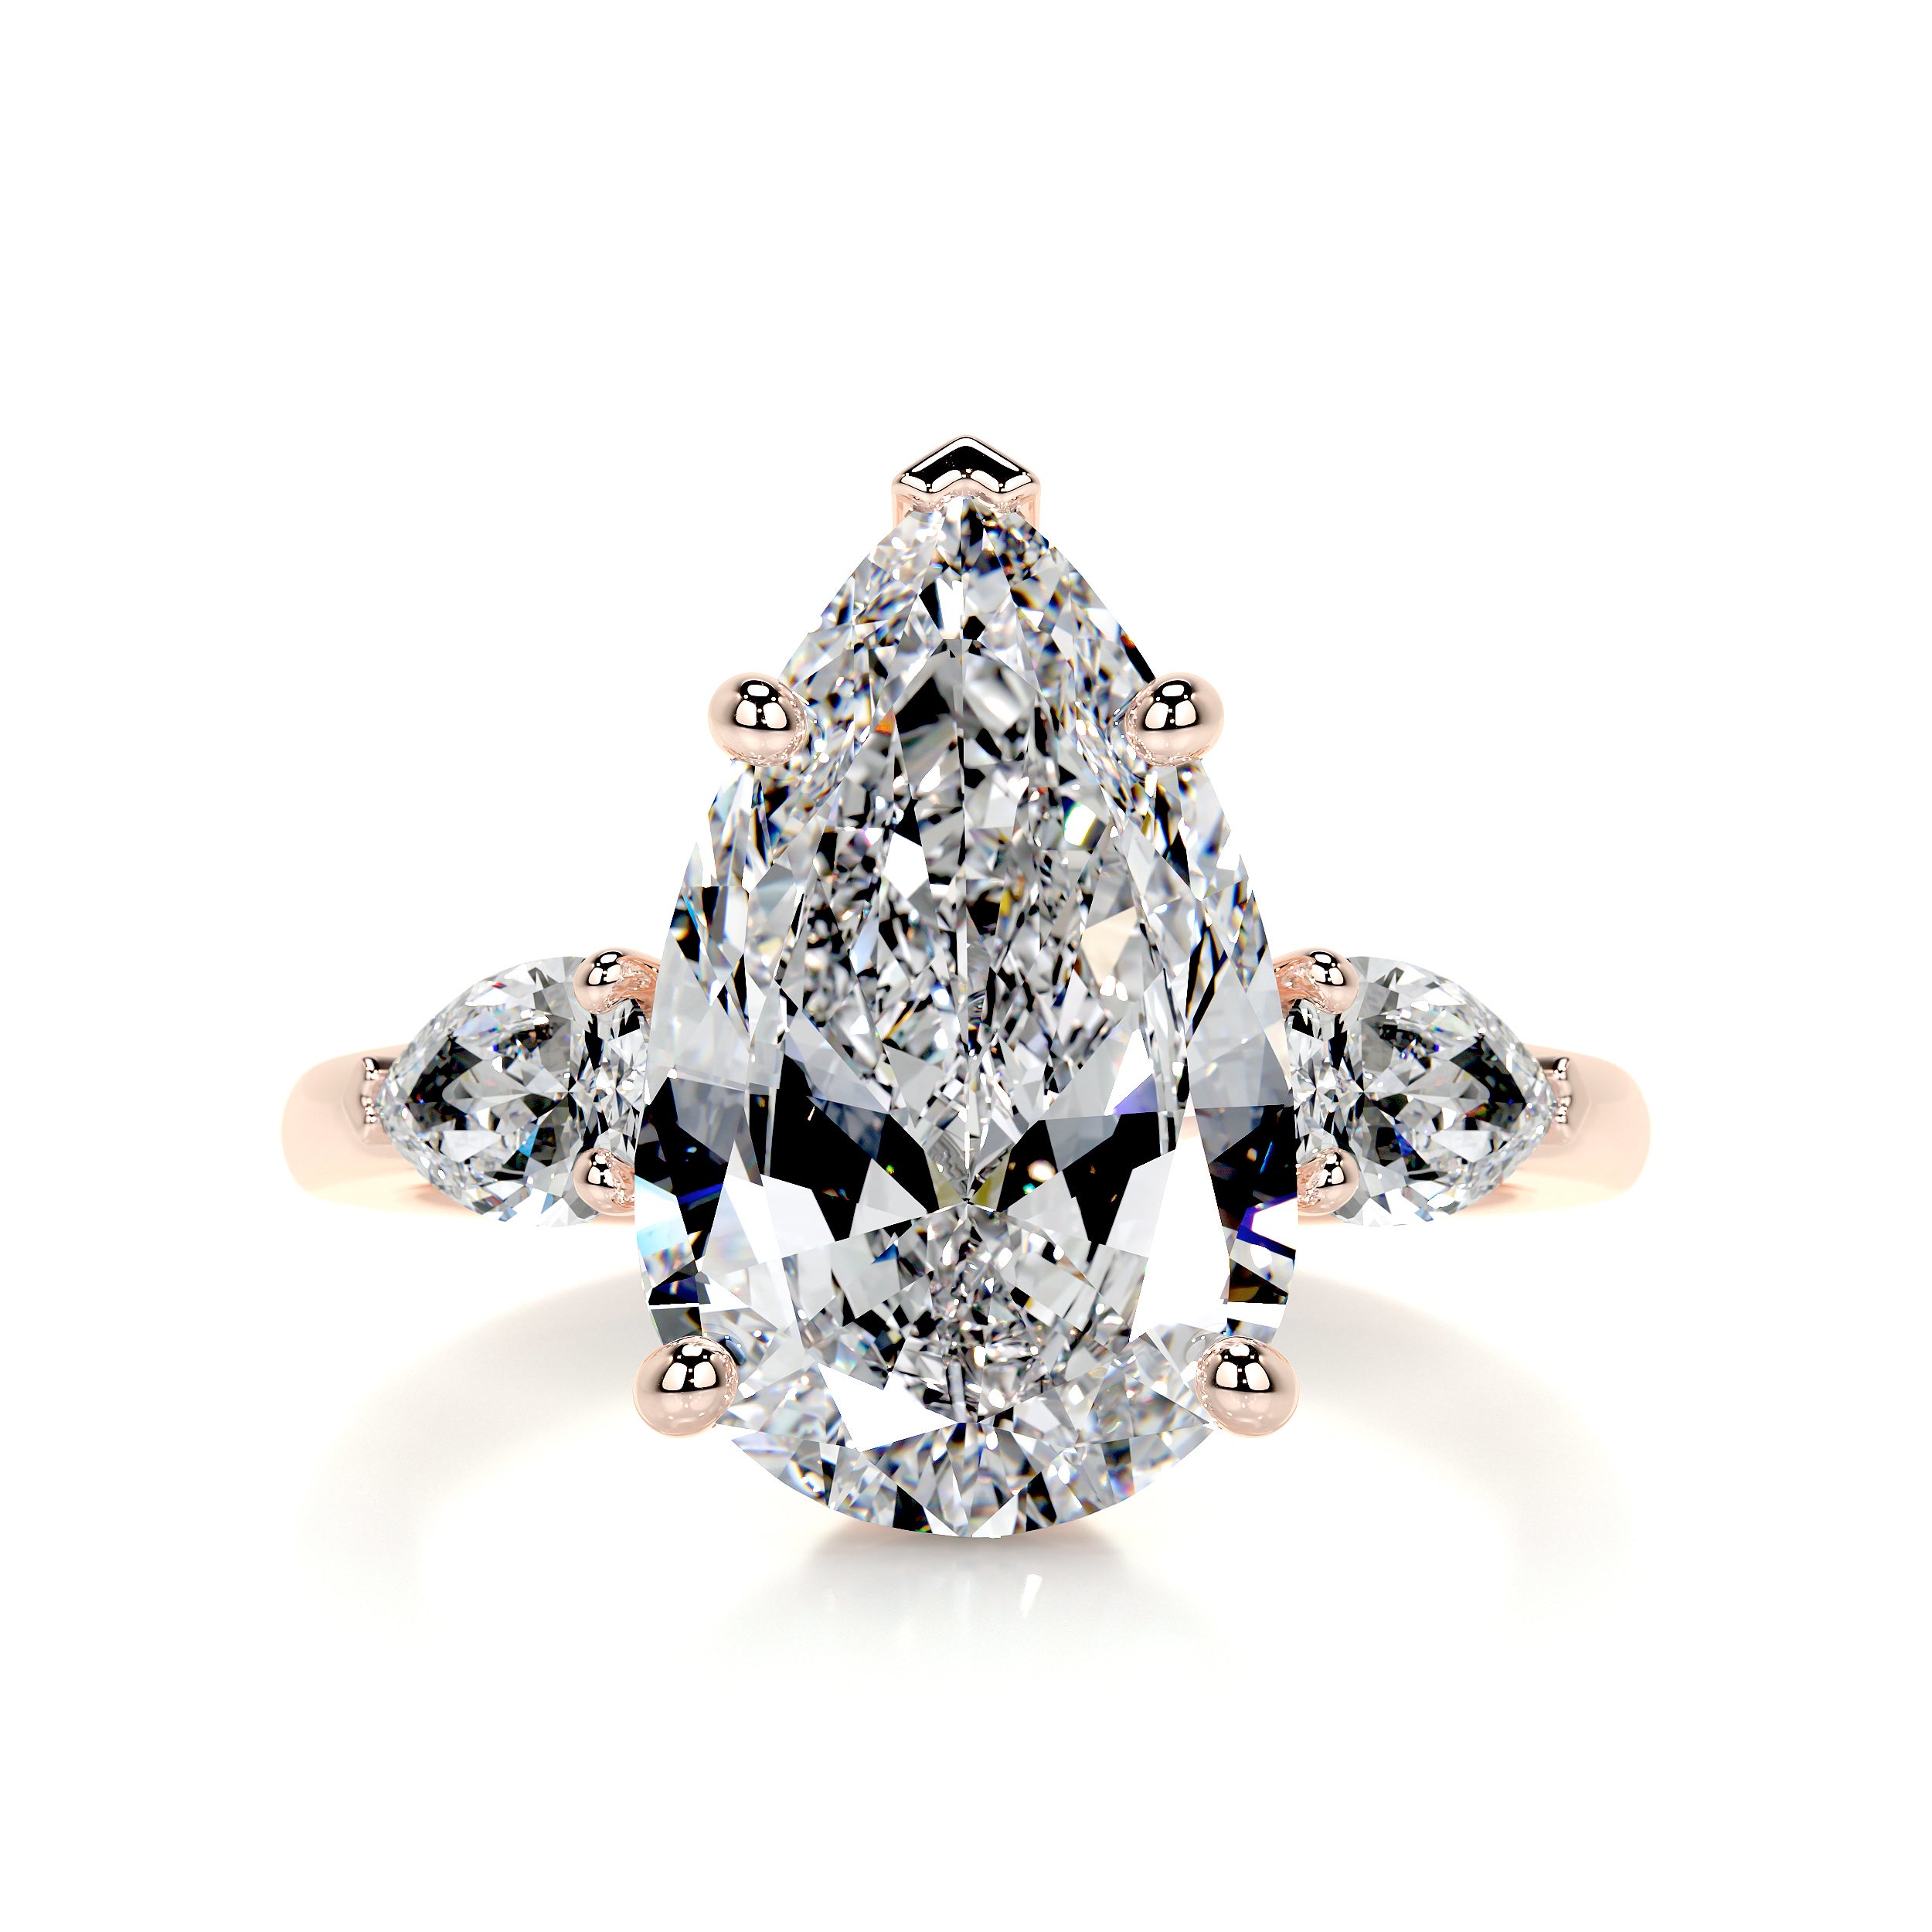 Kamala Diamond Engagement Ring   (5.5 Carat) -14K Rose Gold